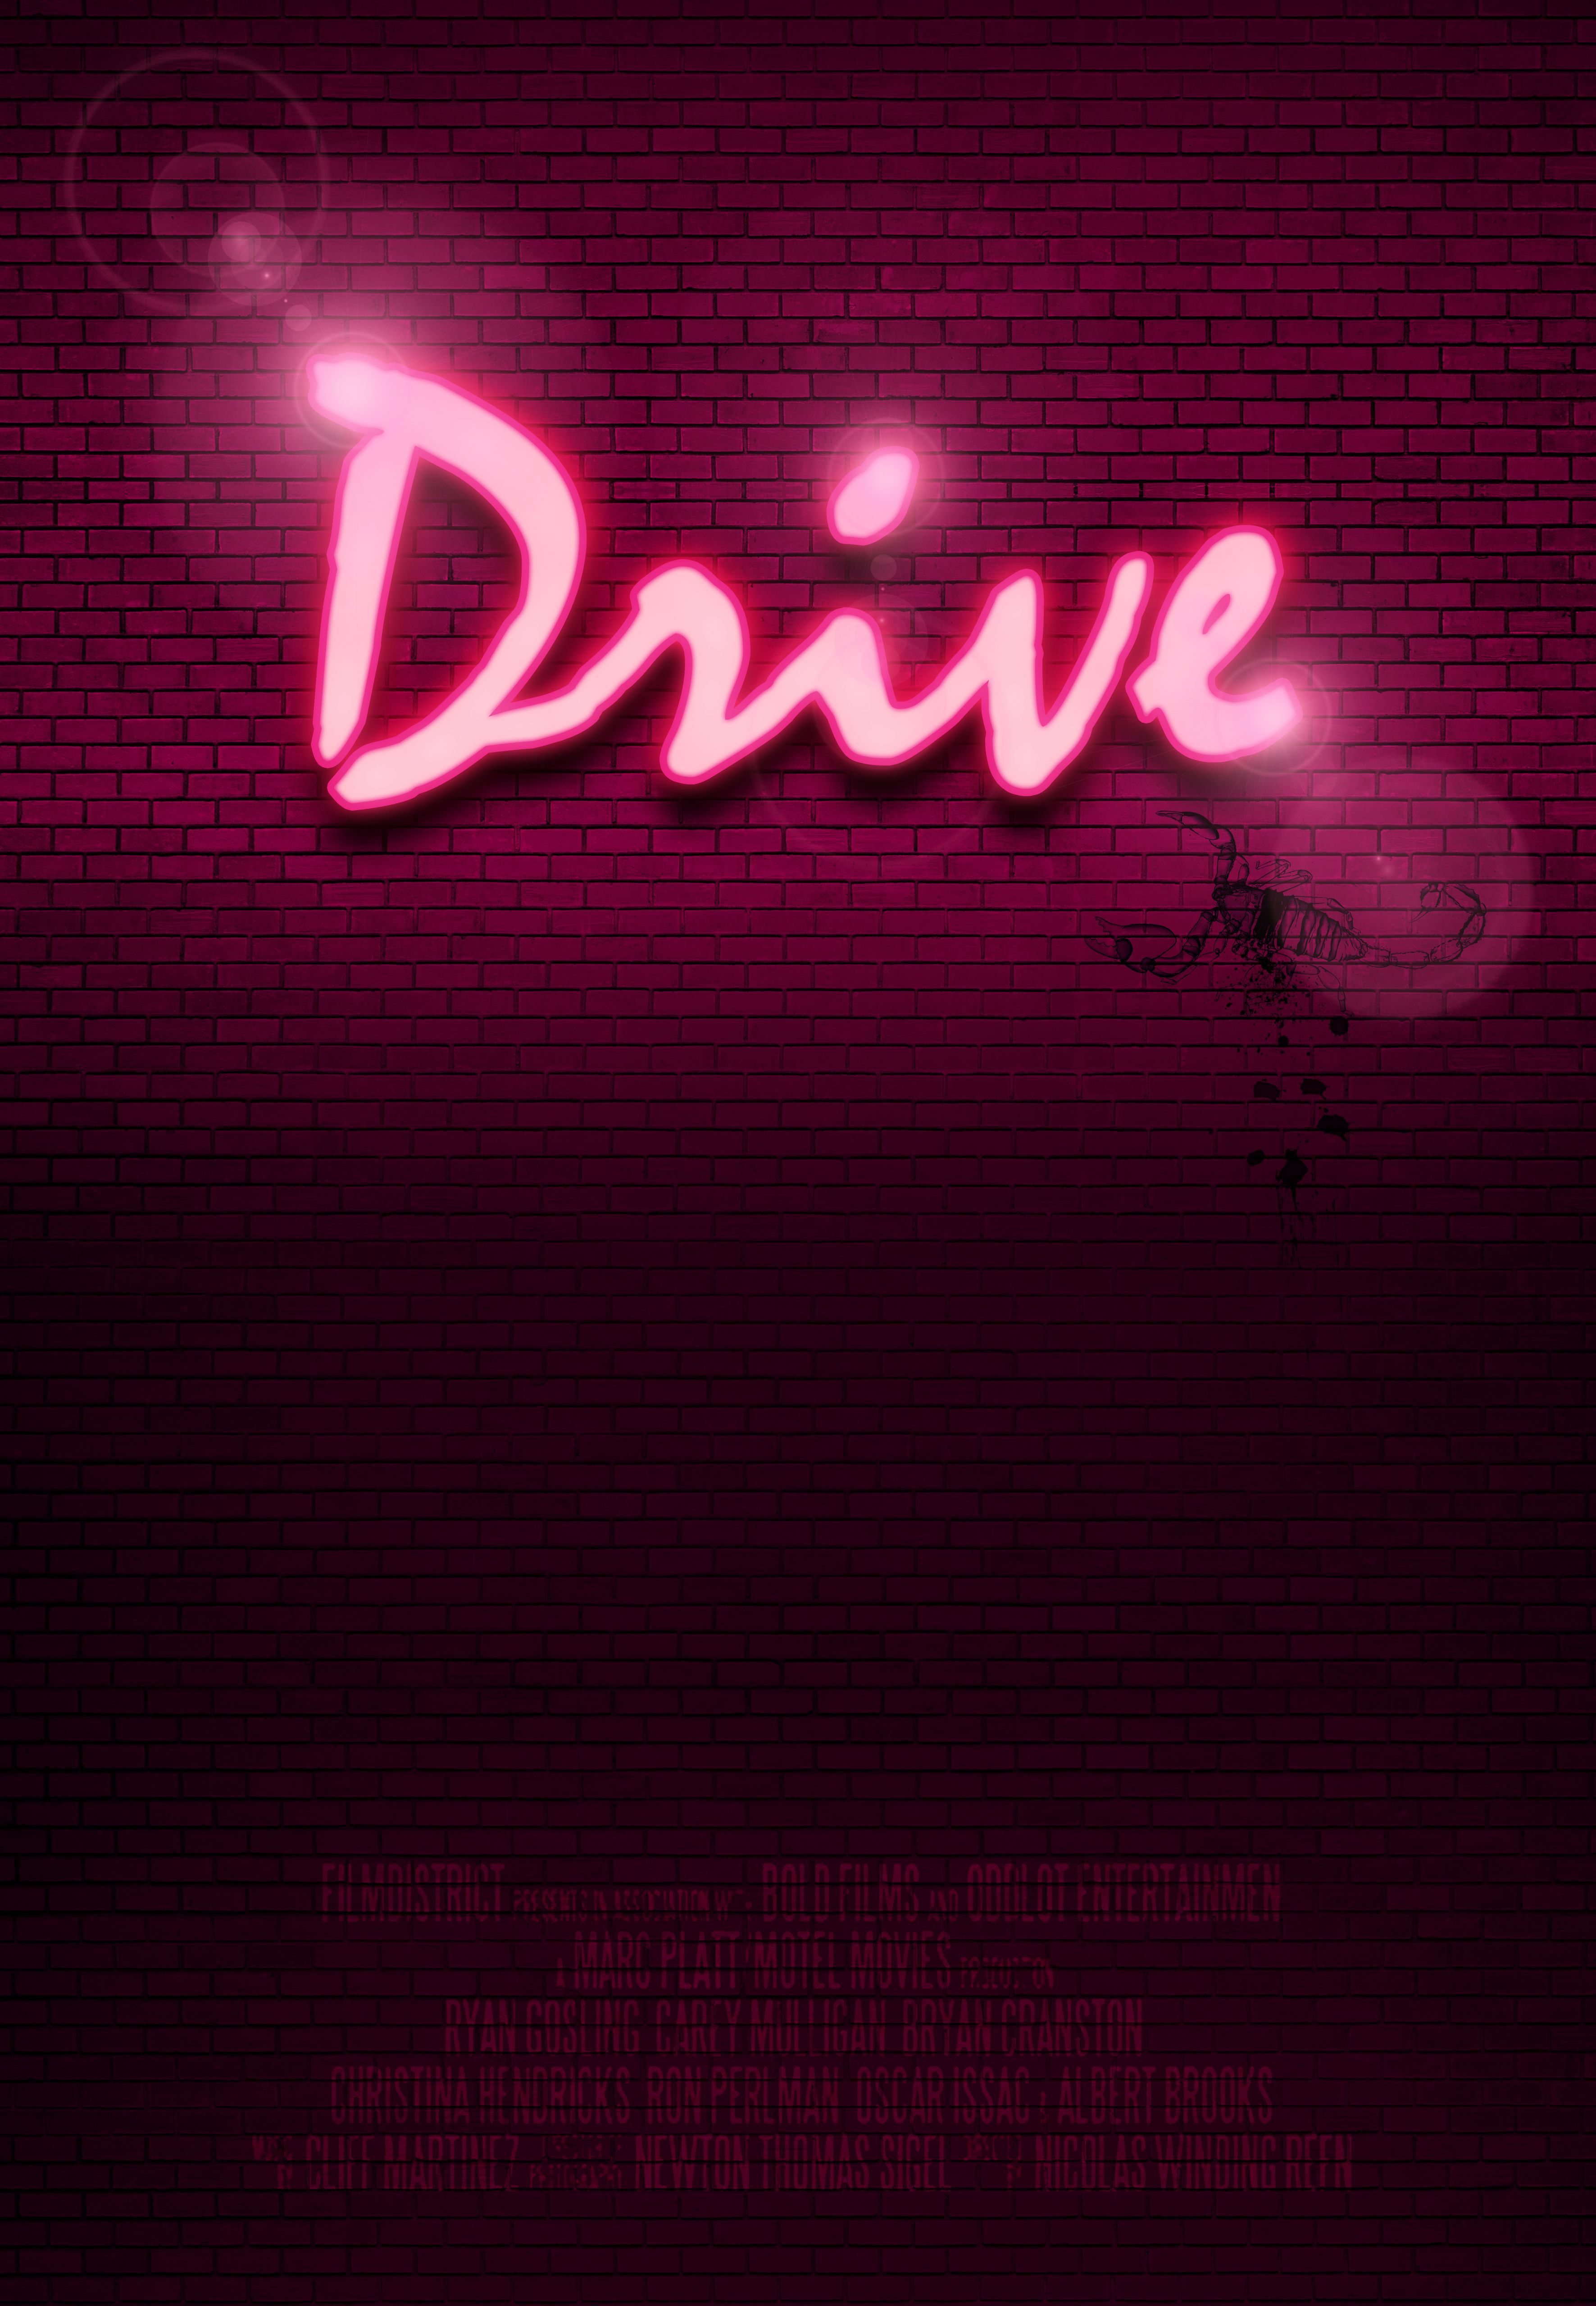 Drive movie poster. Drive movie poster, Drive